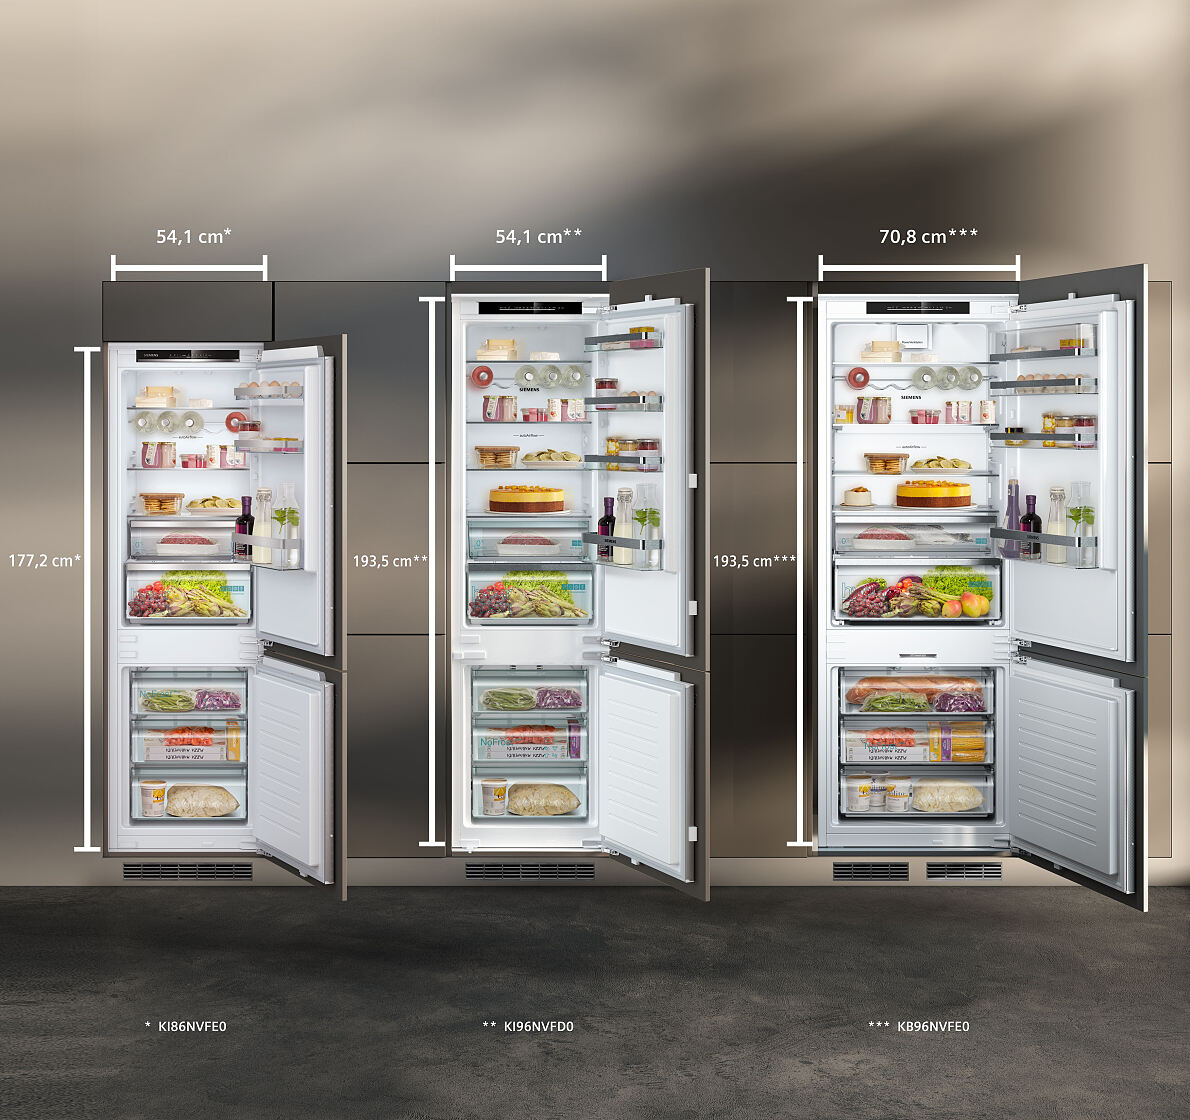 Bis zu 45% mehr Stauraum für Lebensmittel bieten die neuen Siemens-Kühl-Gefrierkombinationen.